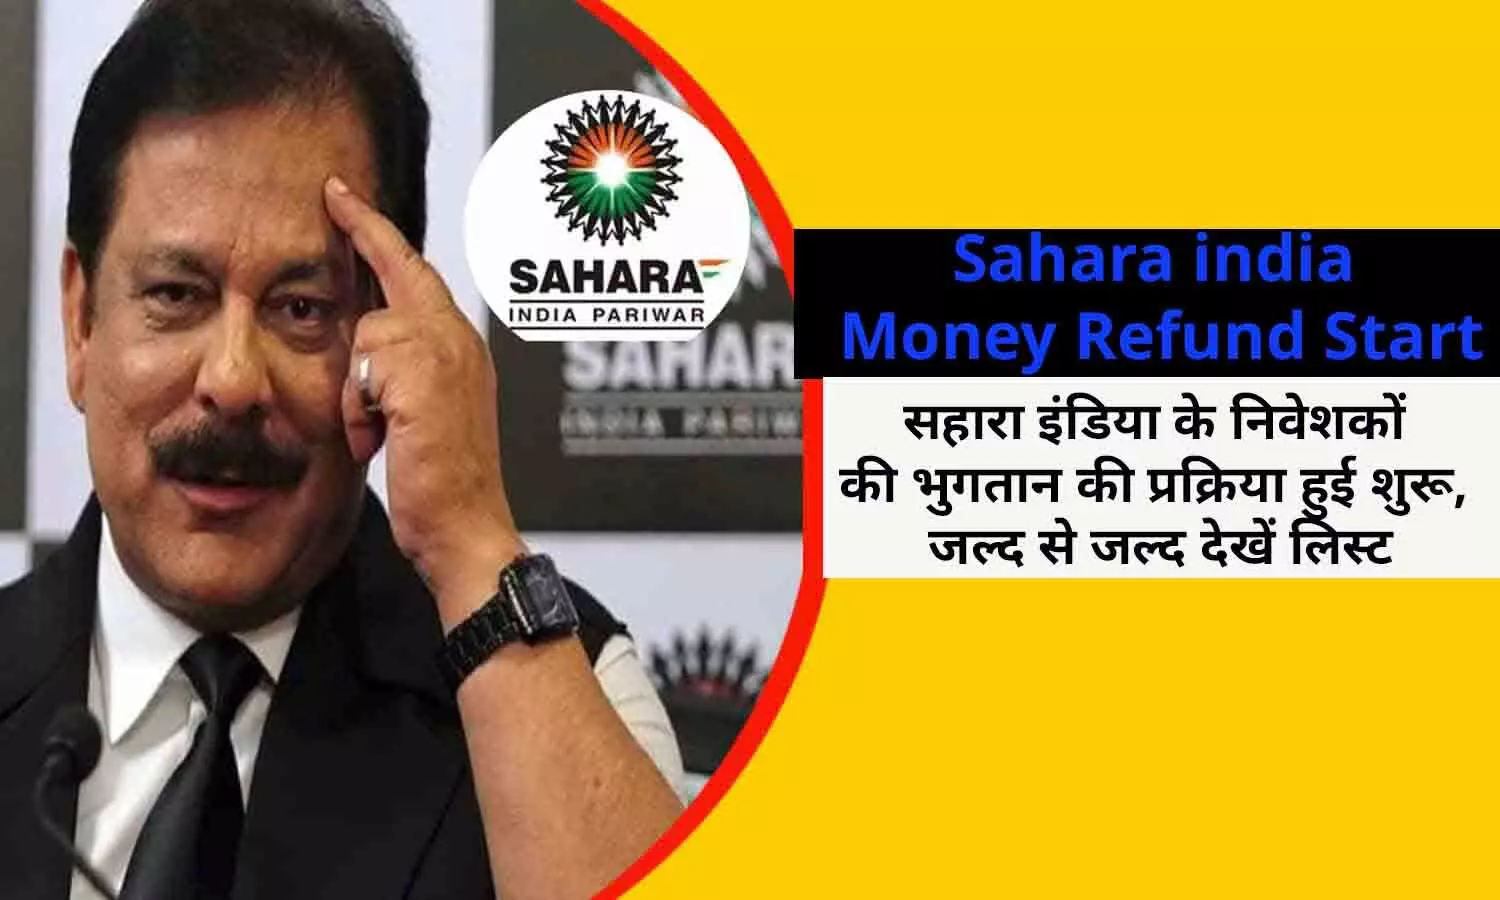 Sahara india Money Refund Start